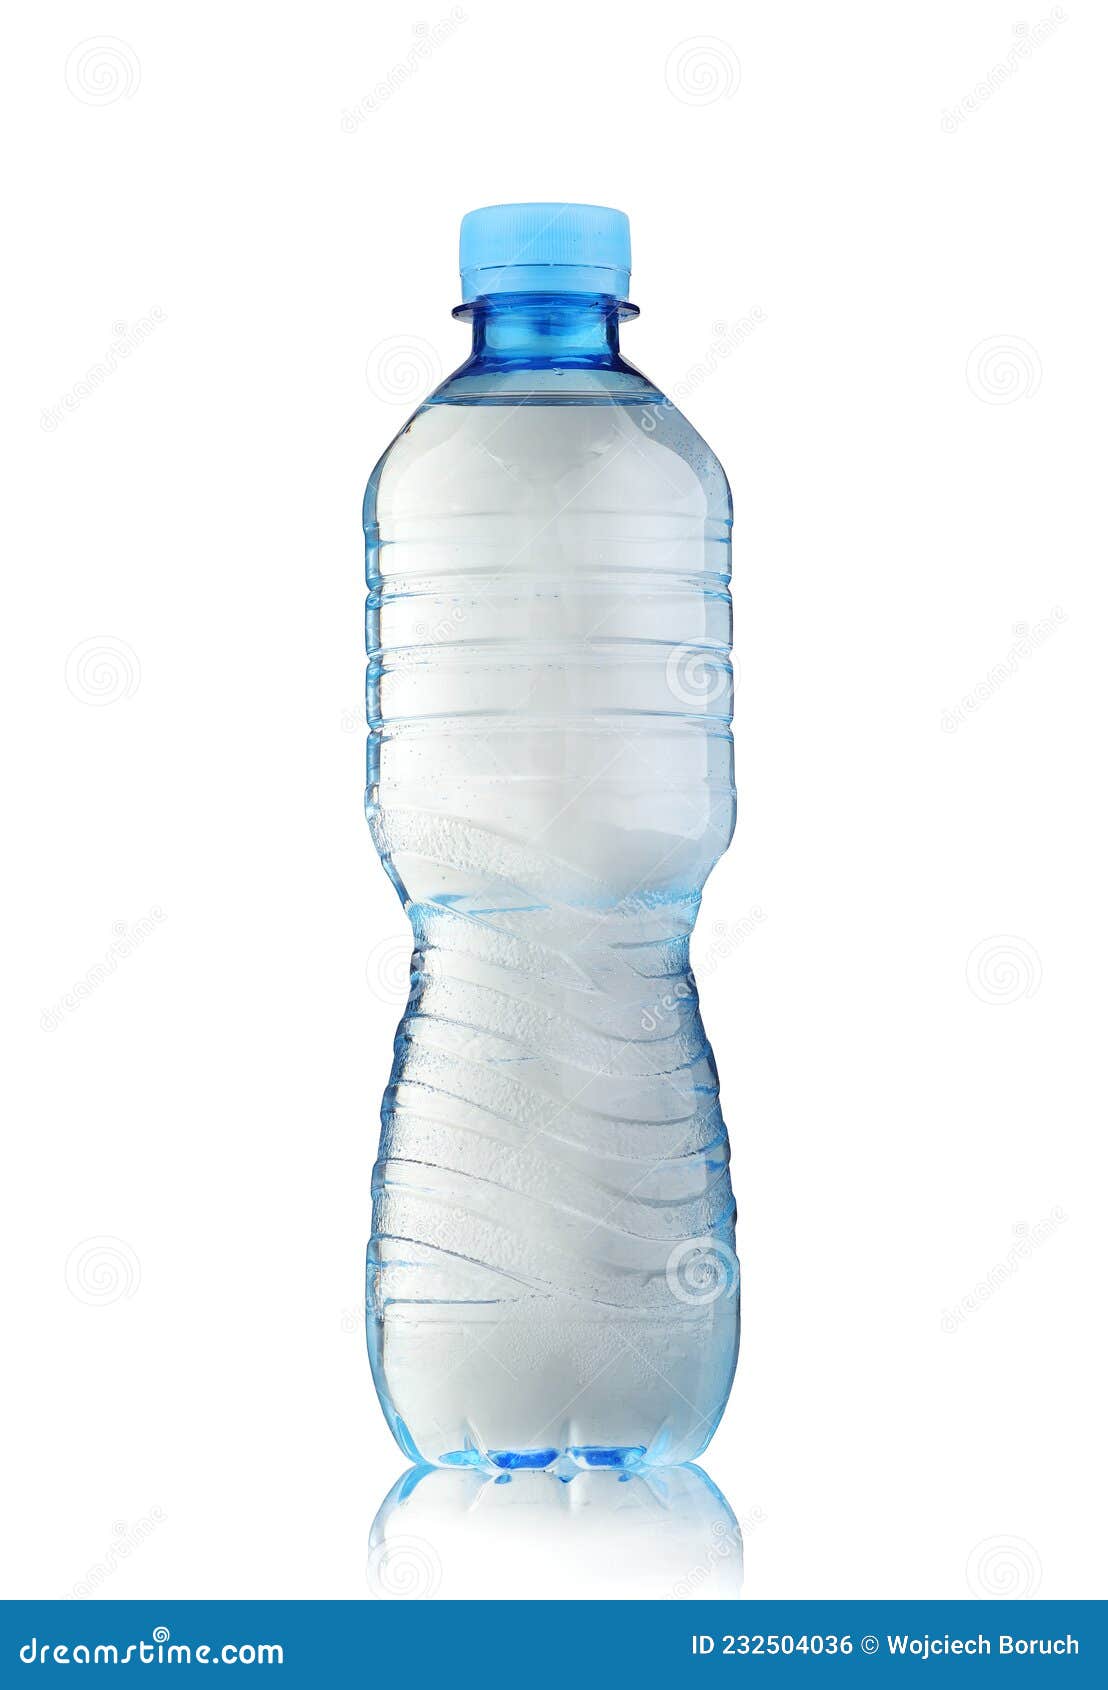 Botella Pequeña De Plástico Con Agua Foto de archivo - Imagen de unlabeled,  aislado: 232504036